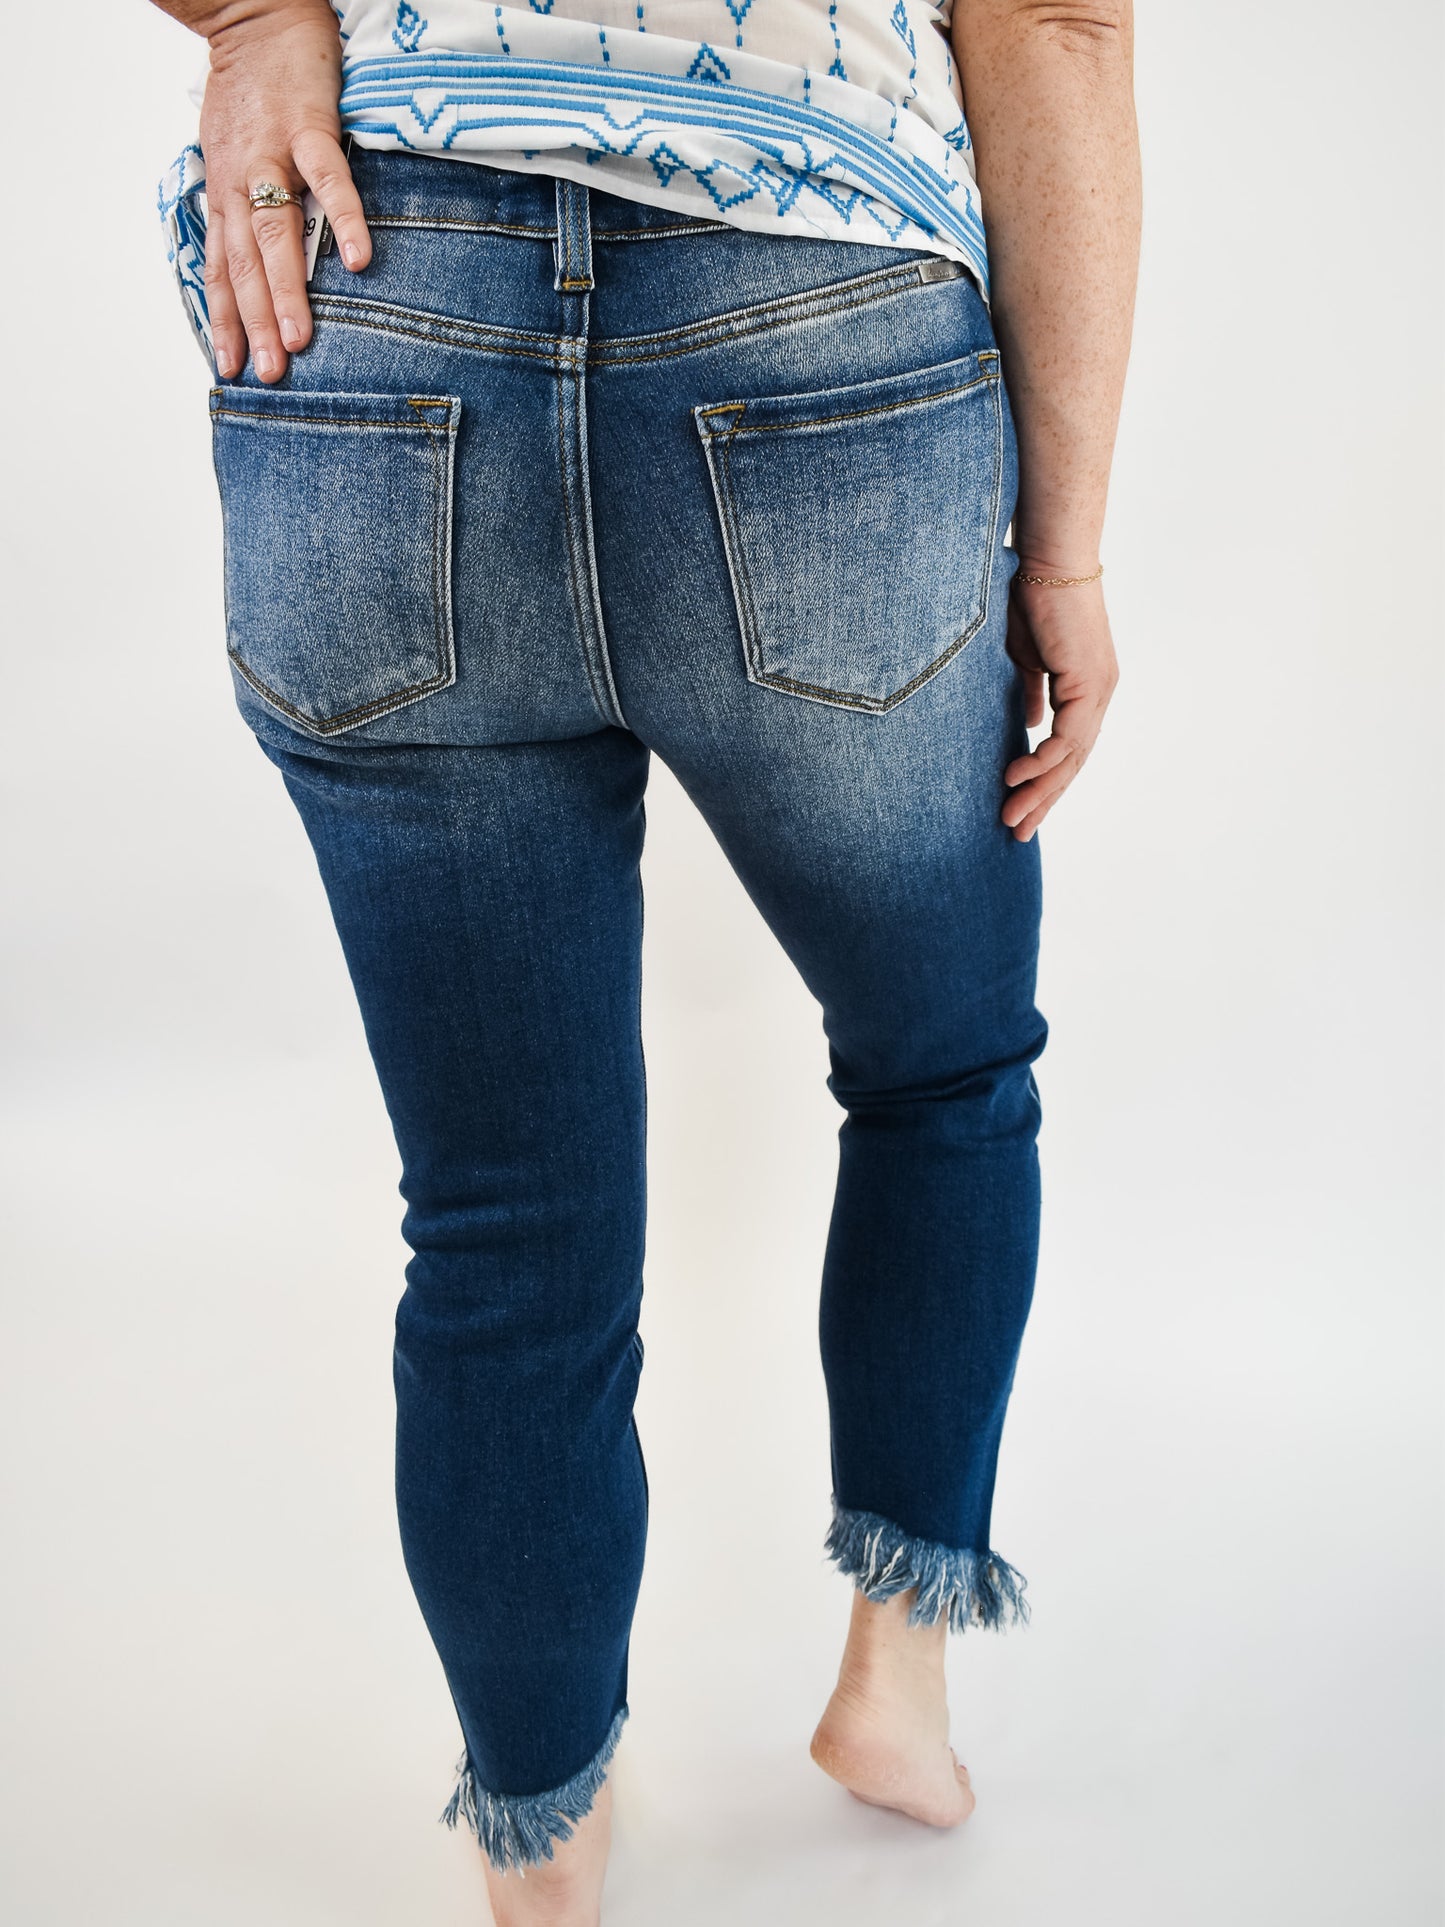 KanCan Gemma Ankle Skinny Jeans